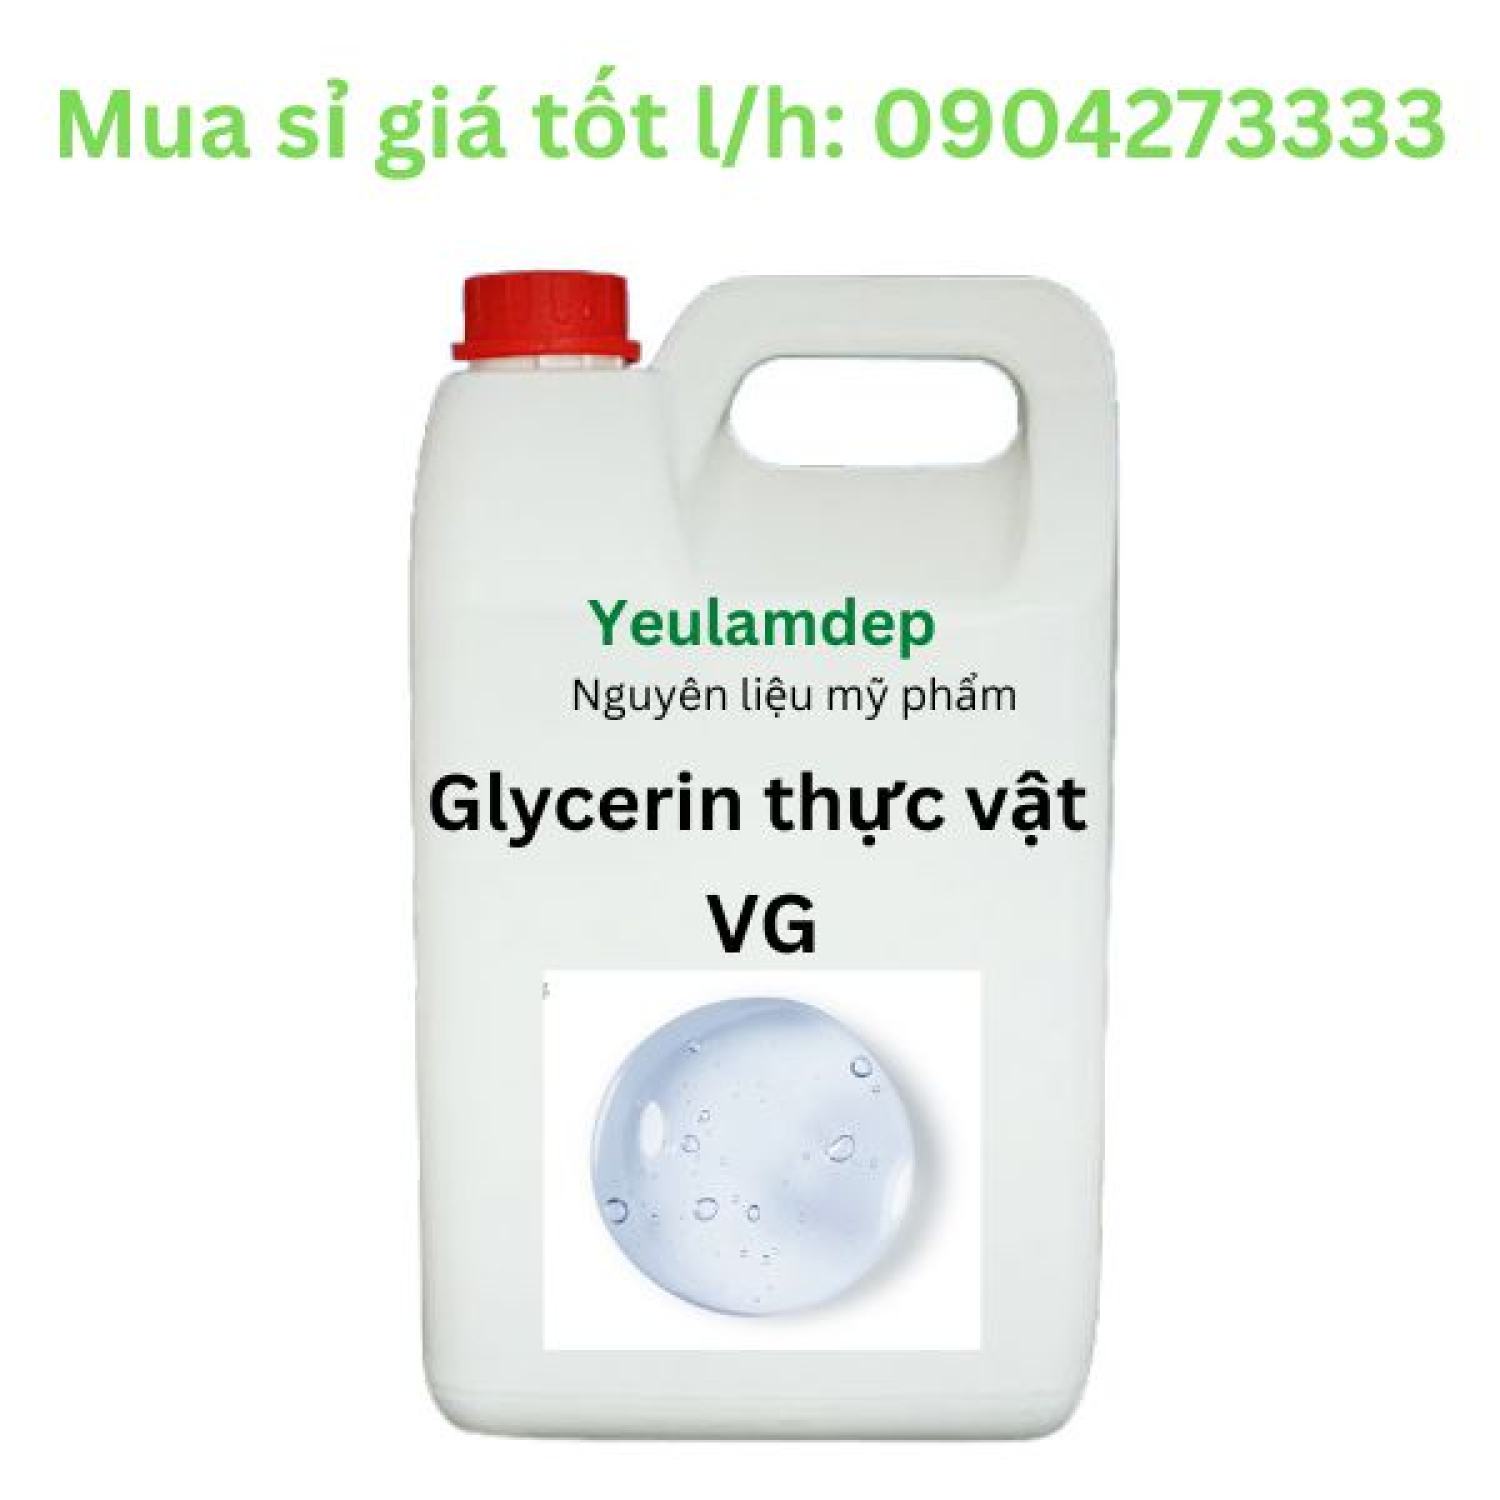 Glycerin thực vật 99,7% vg - nguyên liệu mỹ phẩm - 1 kg - ảnh sản phẩm 1